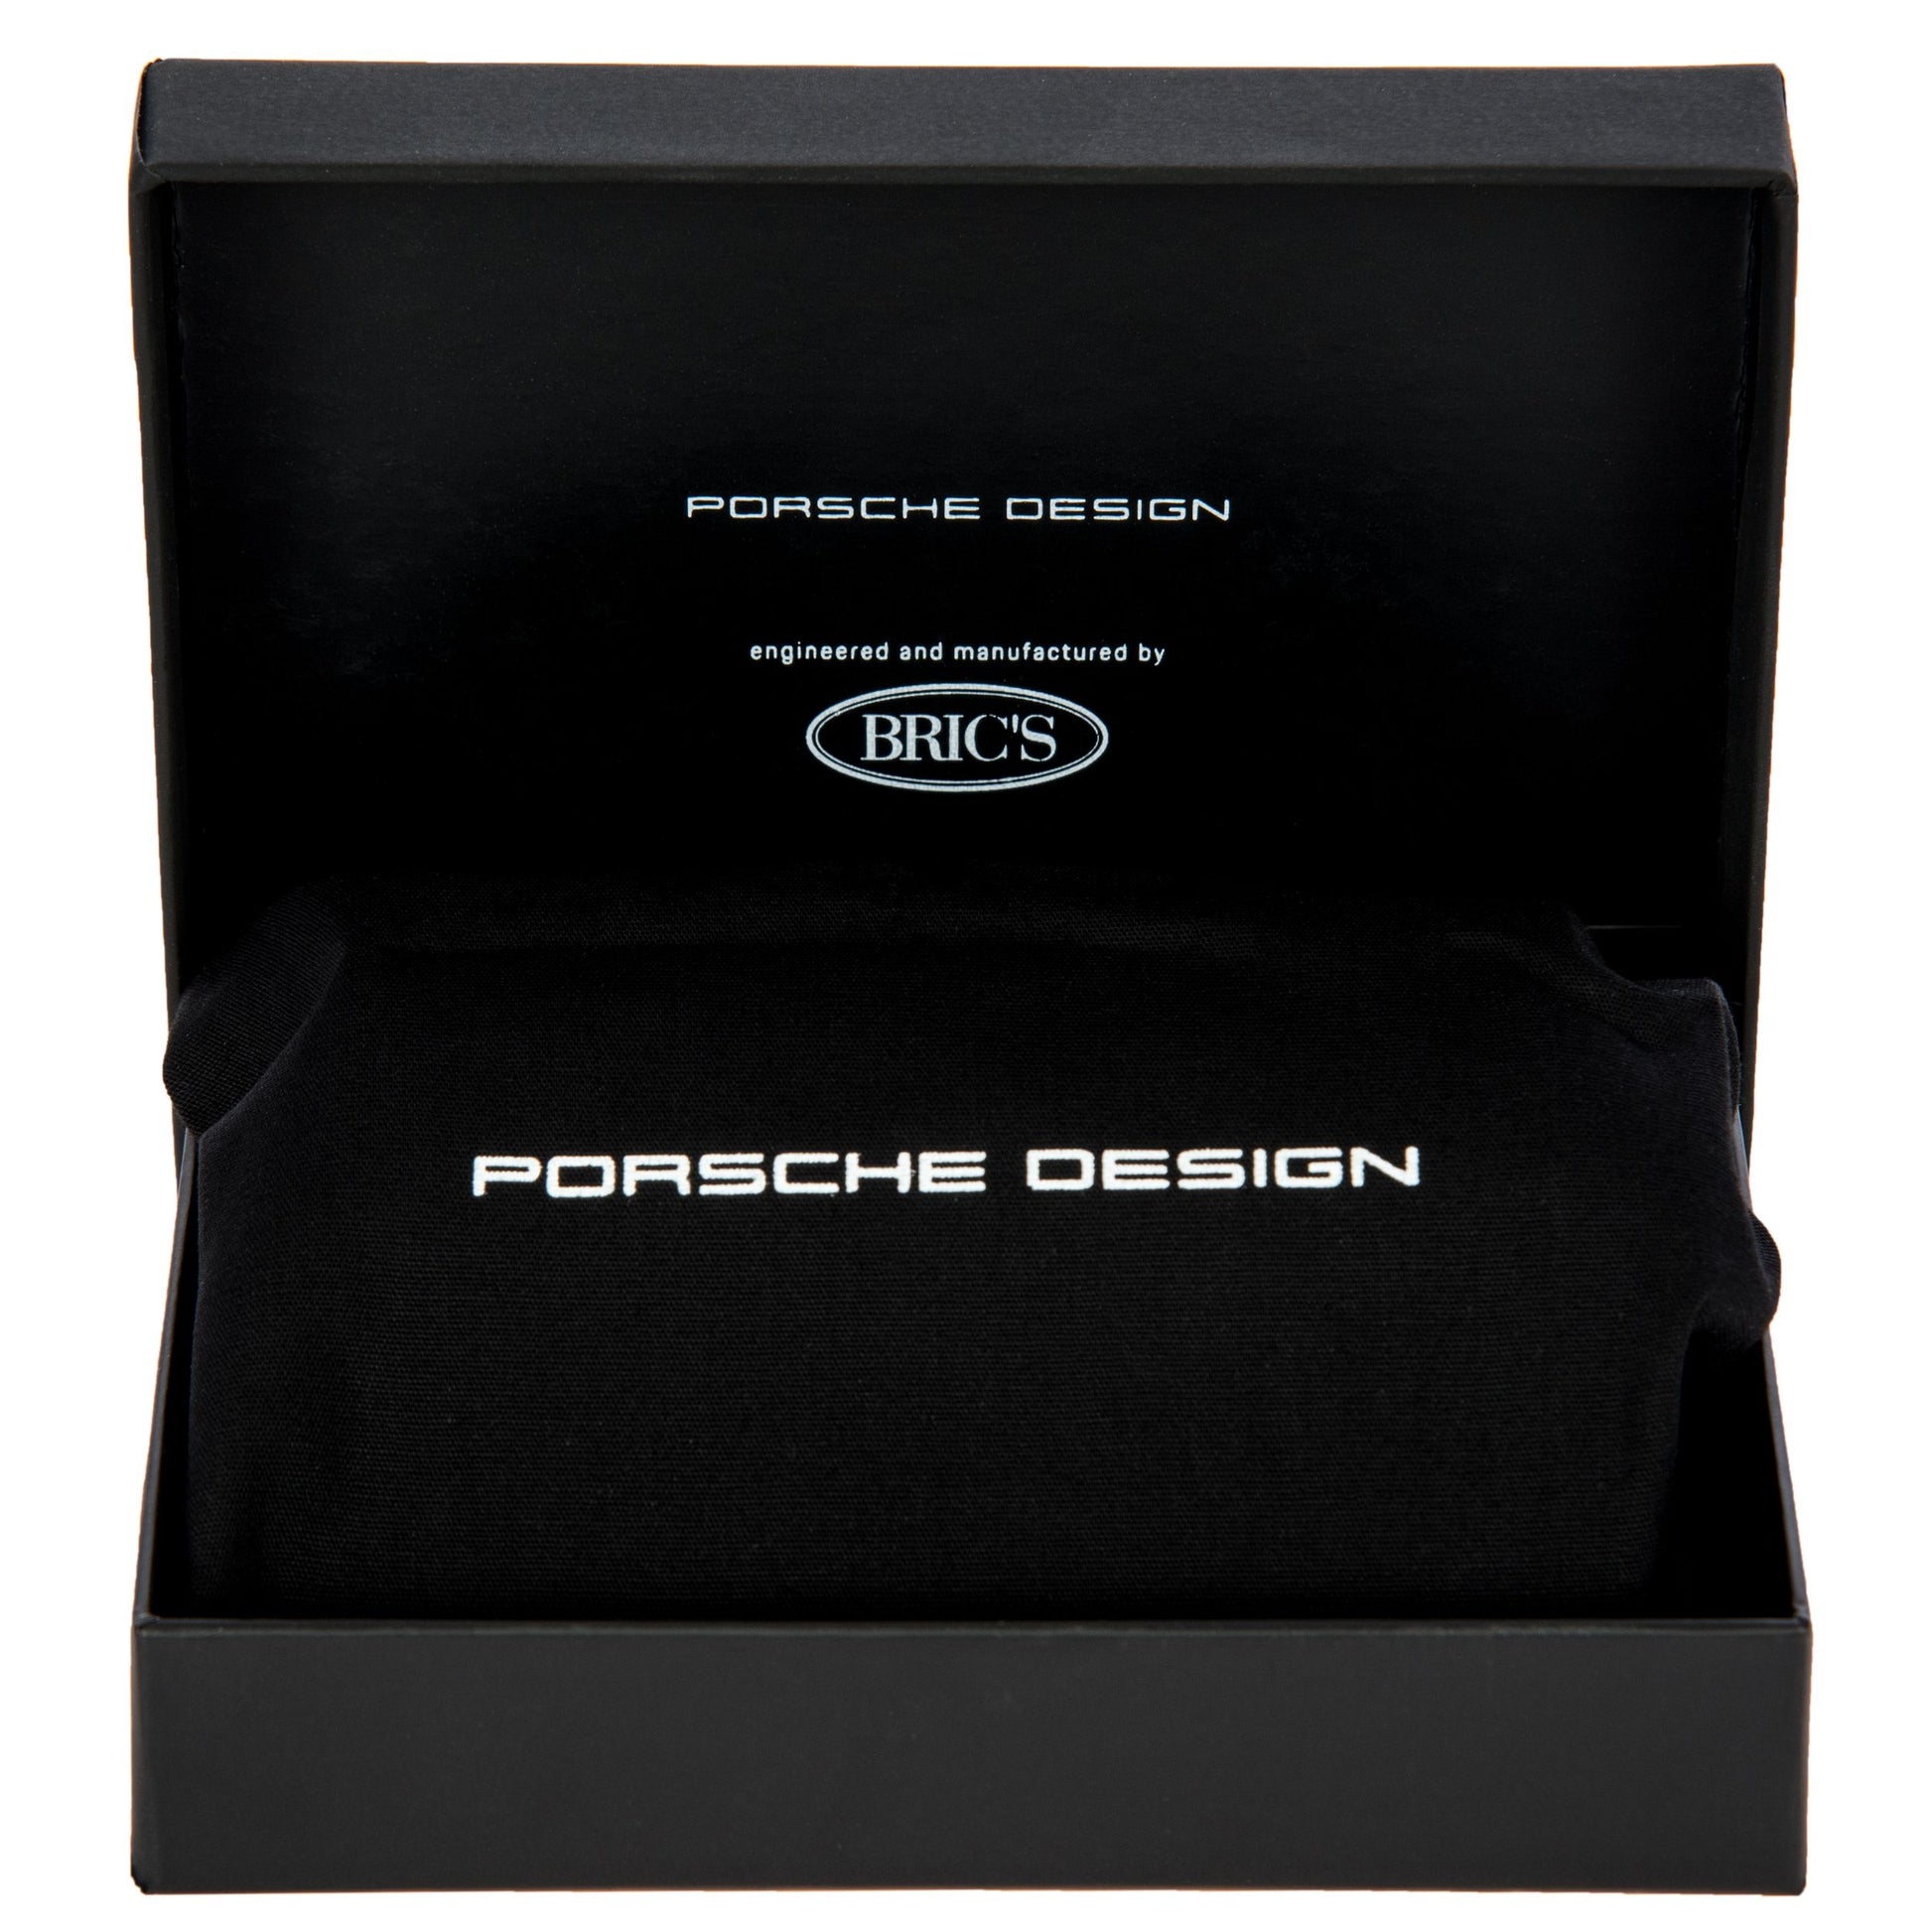 Porsche Design Cardholder SECRID